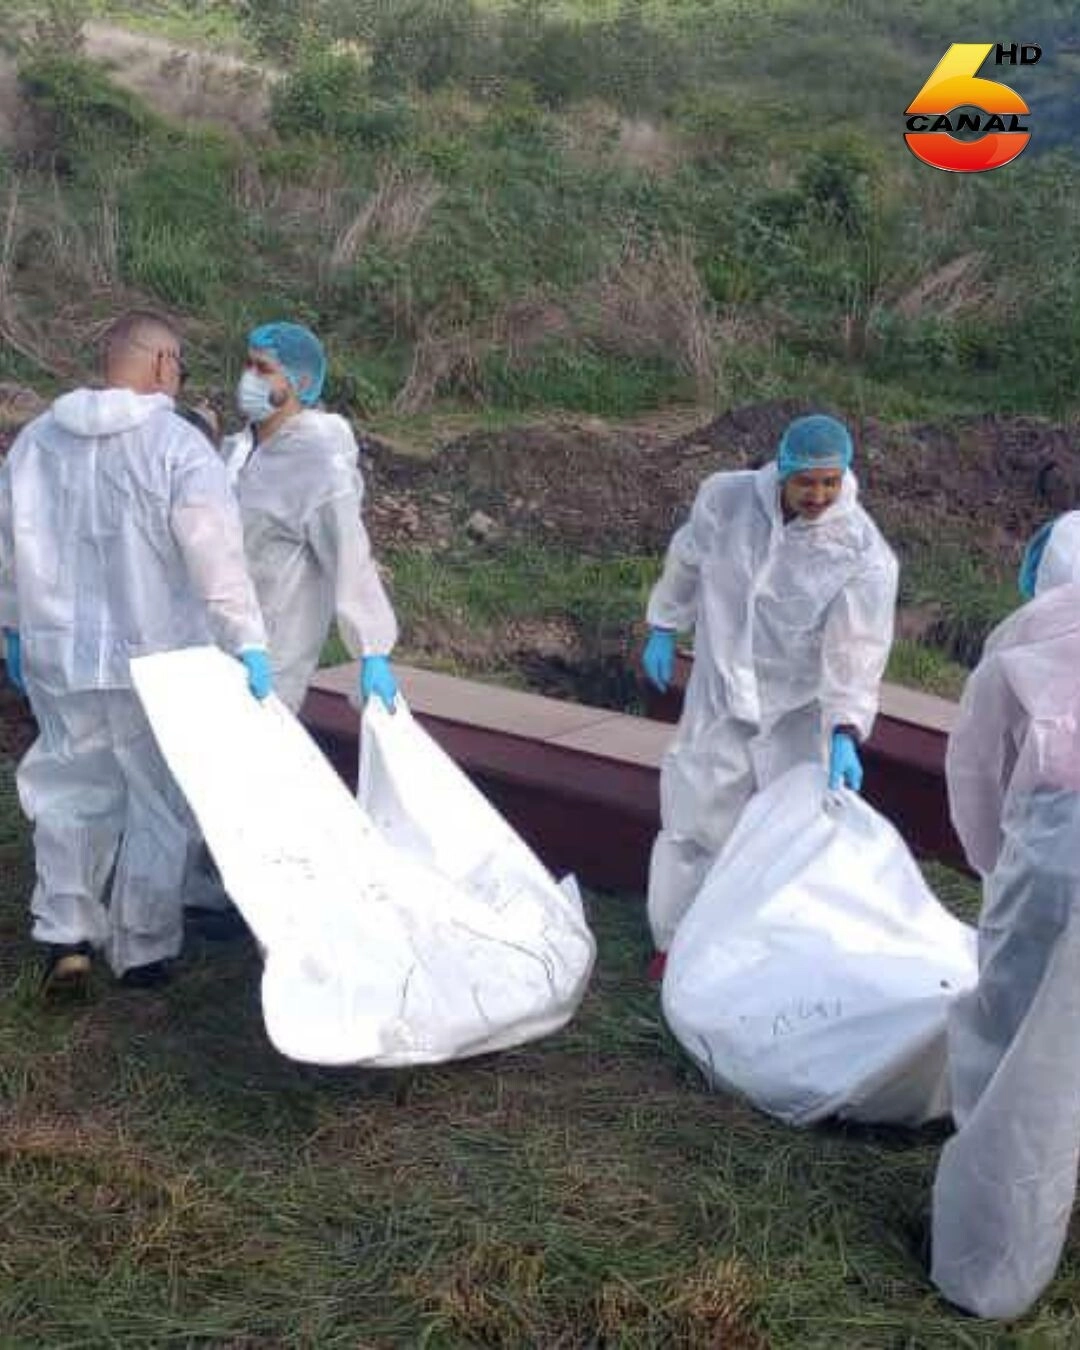 21 cadáveres no reclamados en la morgue serán inhumados03